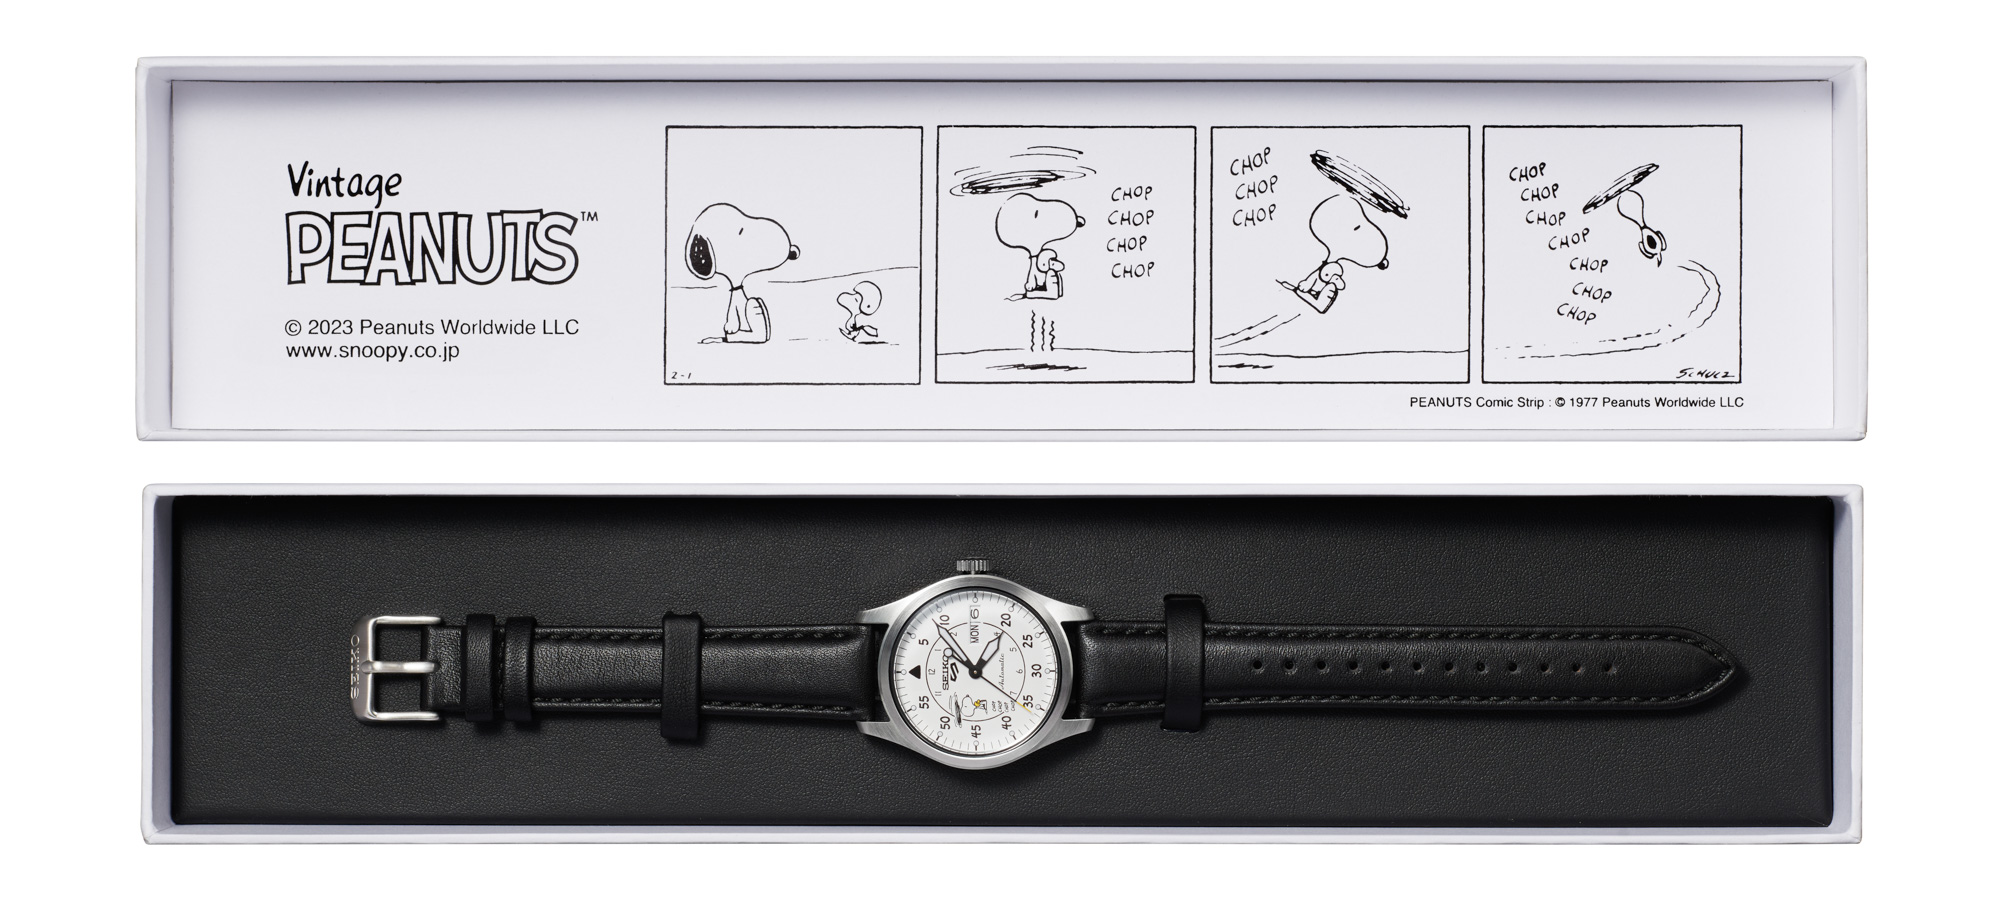 Новинка: наручные часы Seiko 5 Sports, посвященные 55-летию Peanuts